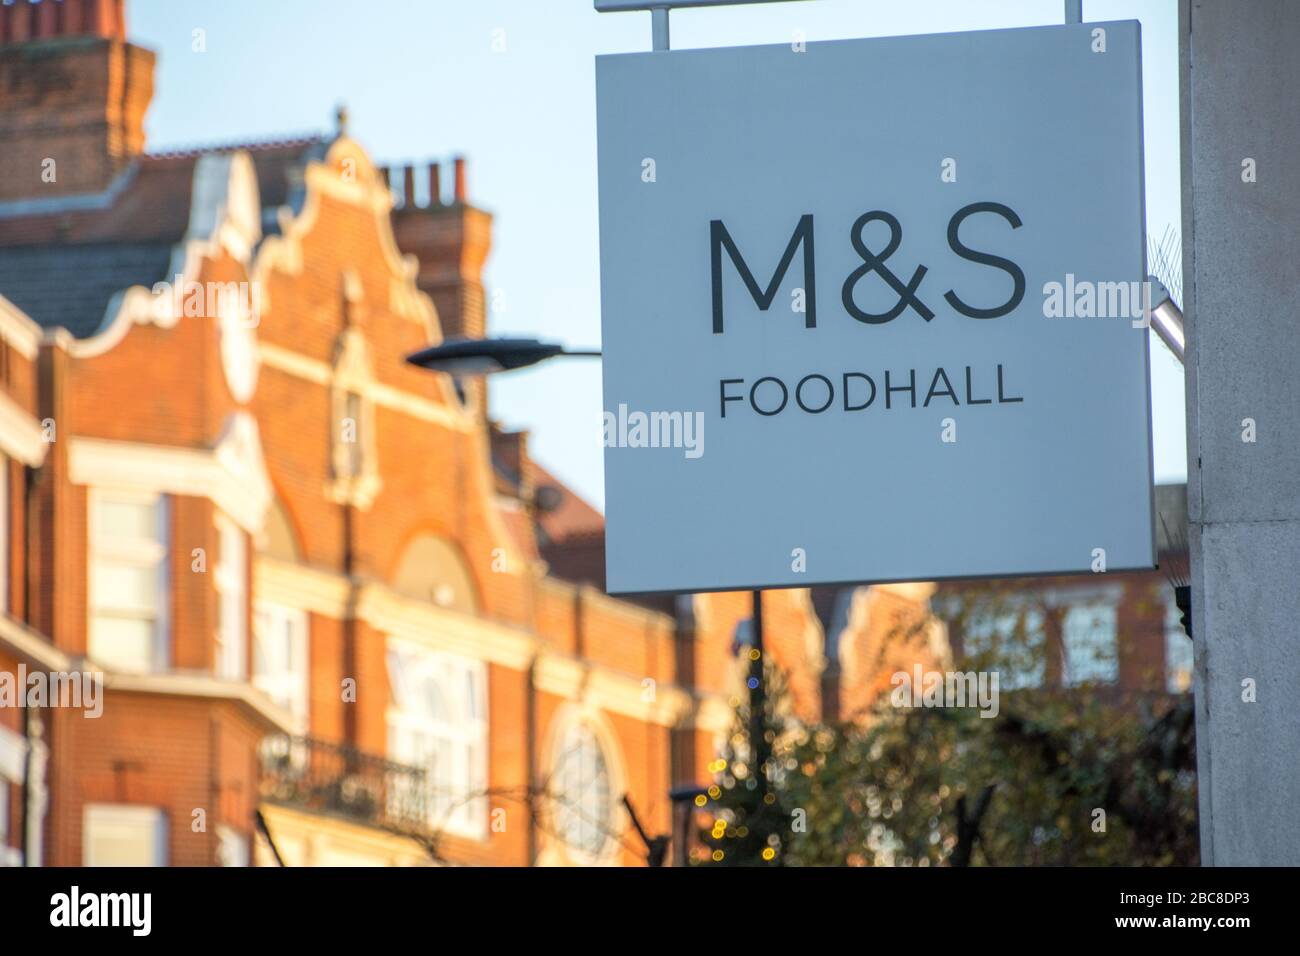 Marks & Spencer Foodhall, supermercato britannico e marchio - logo esterno / segnaletica - Londra Foto Stock